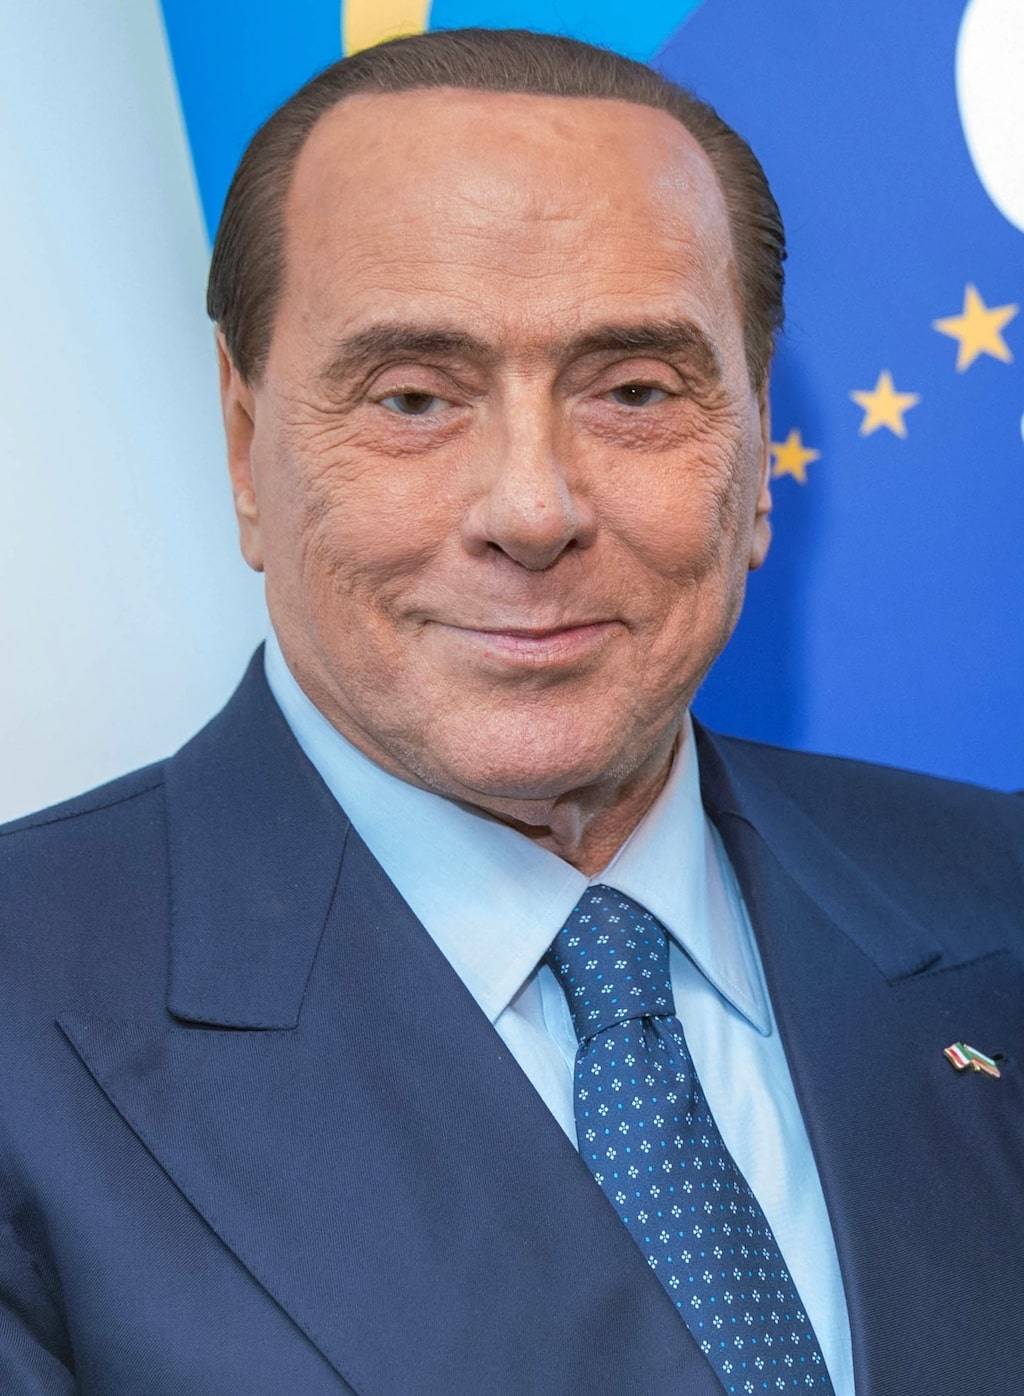 Europee, Berlusconi si candida alle elezioni per "senso di responsabilità"